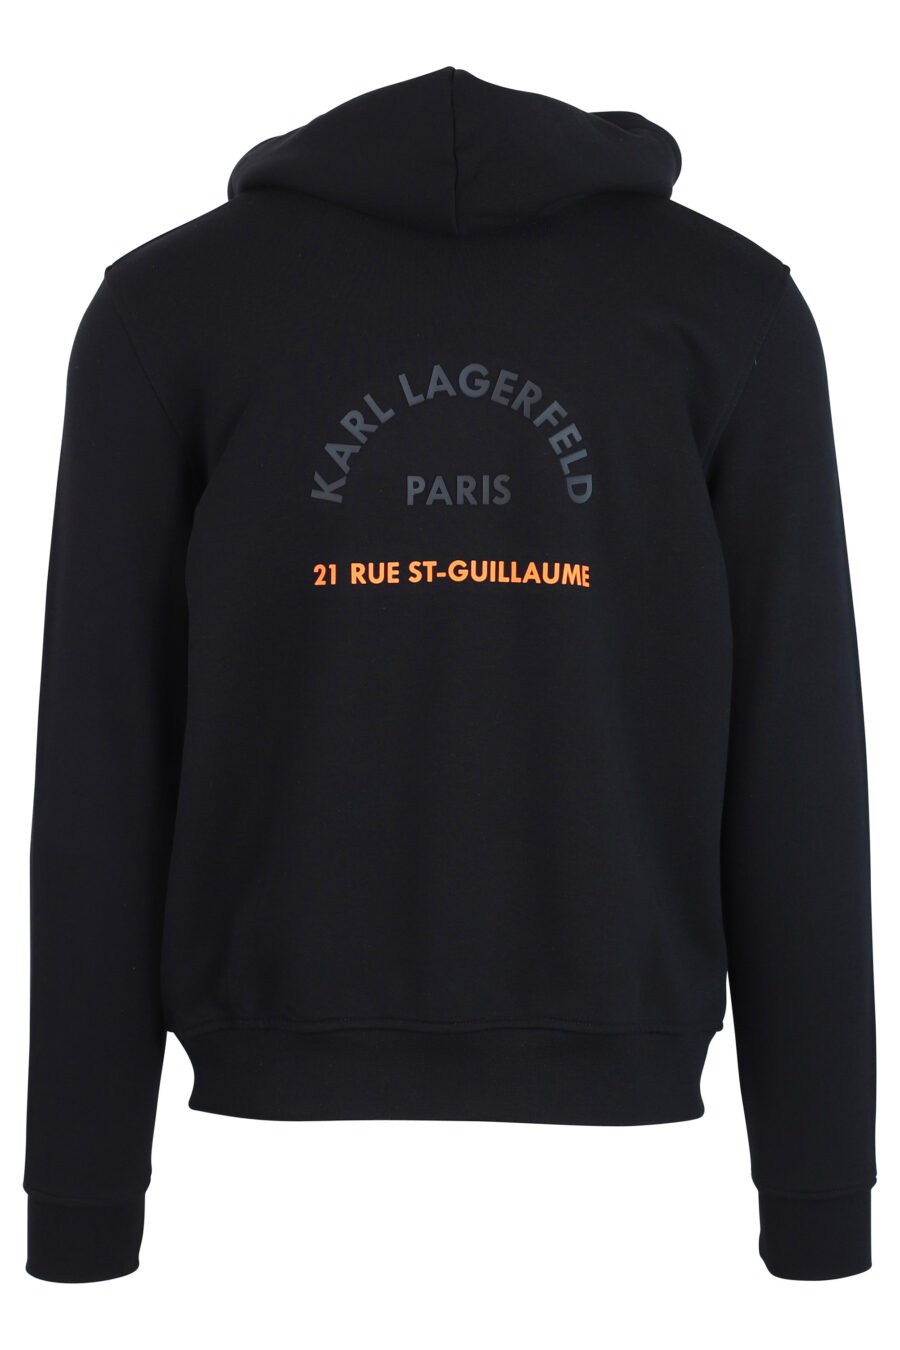 Sweat à capuche noir avec logo orange "rue st guillaume" - IMG 0795